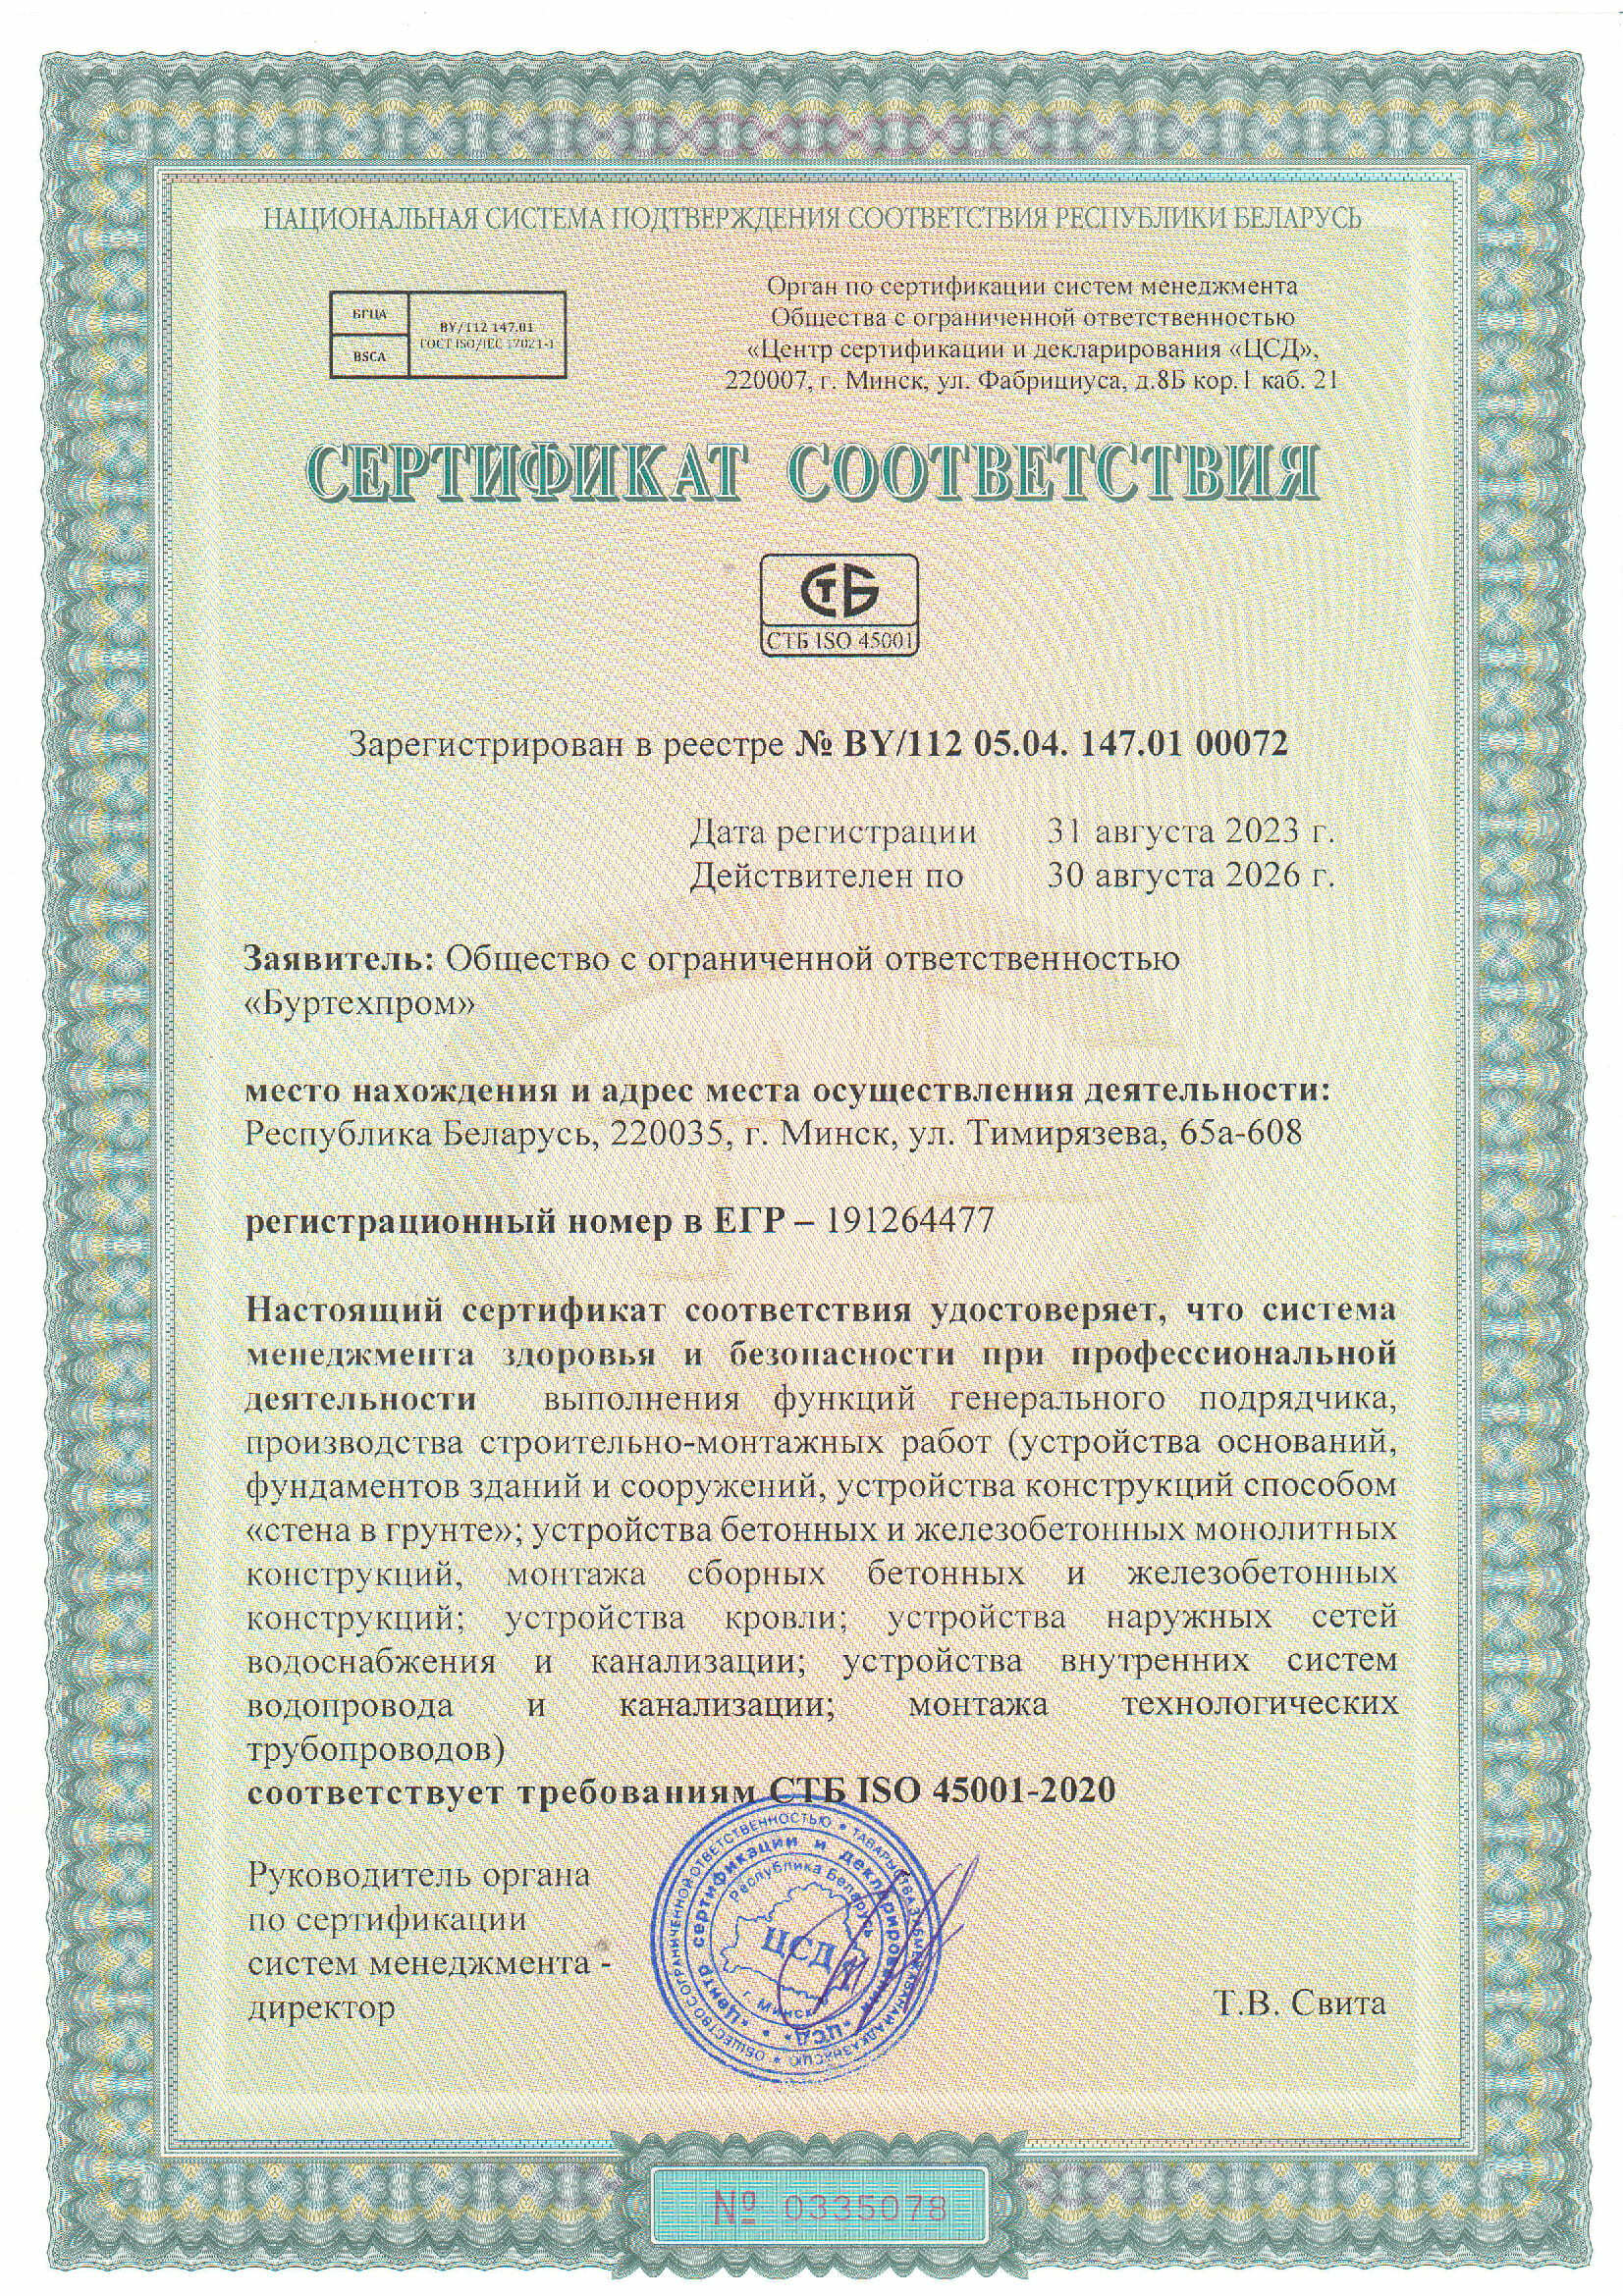 Сертификат соответствия для ООО Буртехпром о системе менеджмента и здоровья и безопасности при профессиональной деятельностивыполнения функций генерального подрядчика